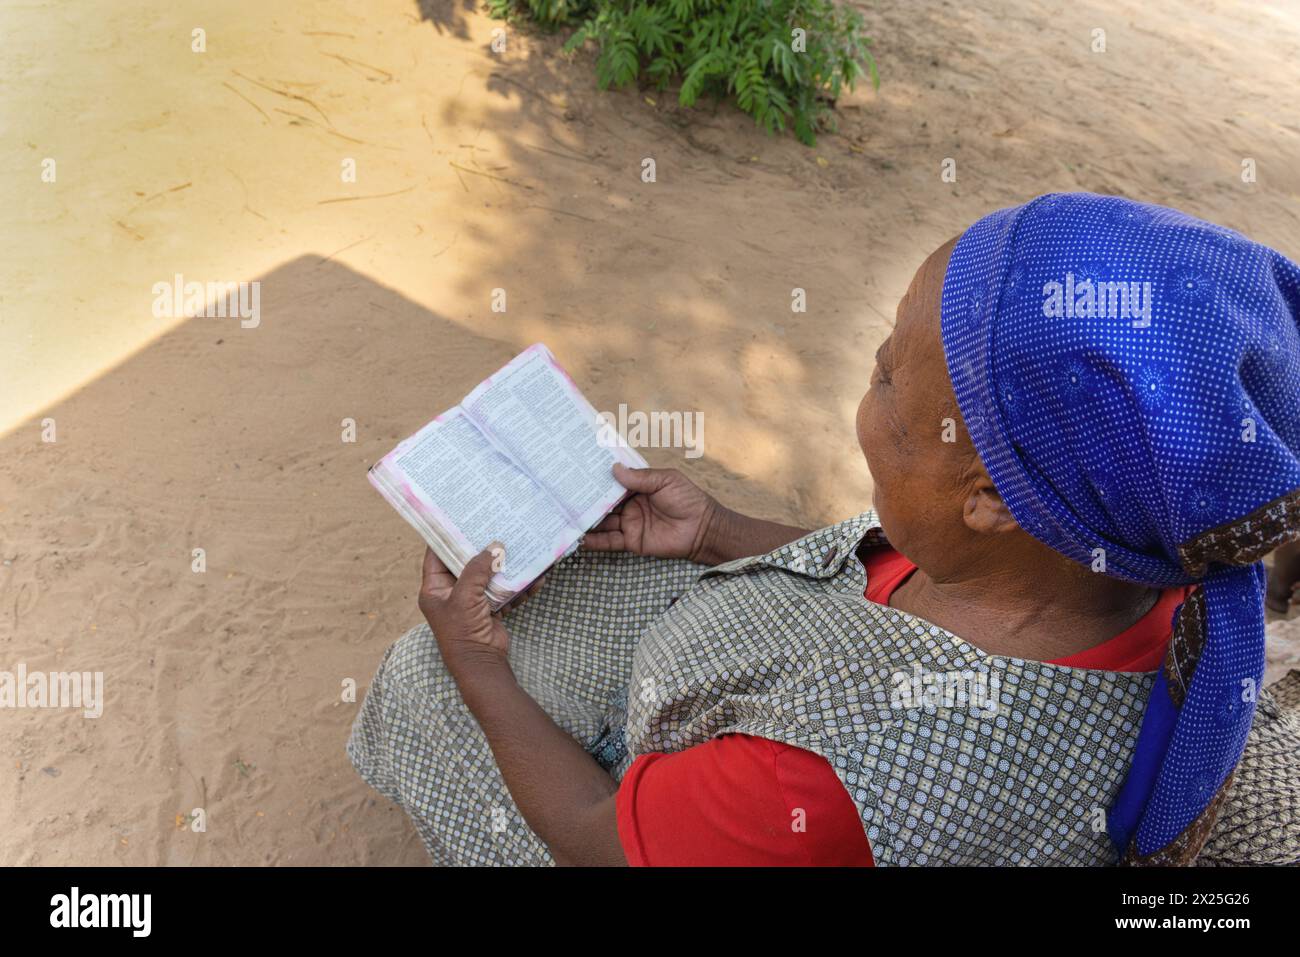 Vecchia donna africana cristiana del villaggio, che legge il libro sacro della bibbia, casual vestito con foulard blu Foto Stock